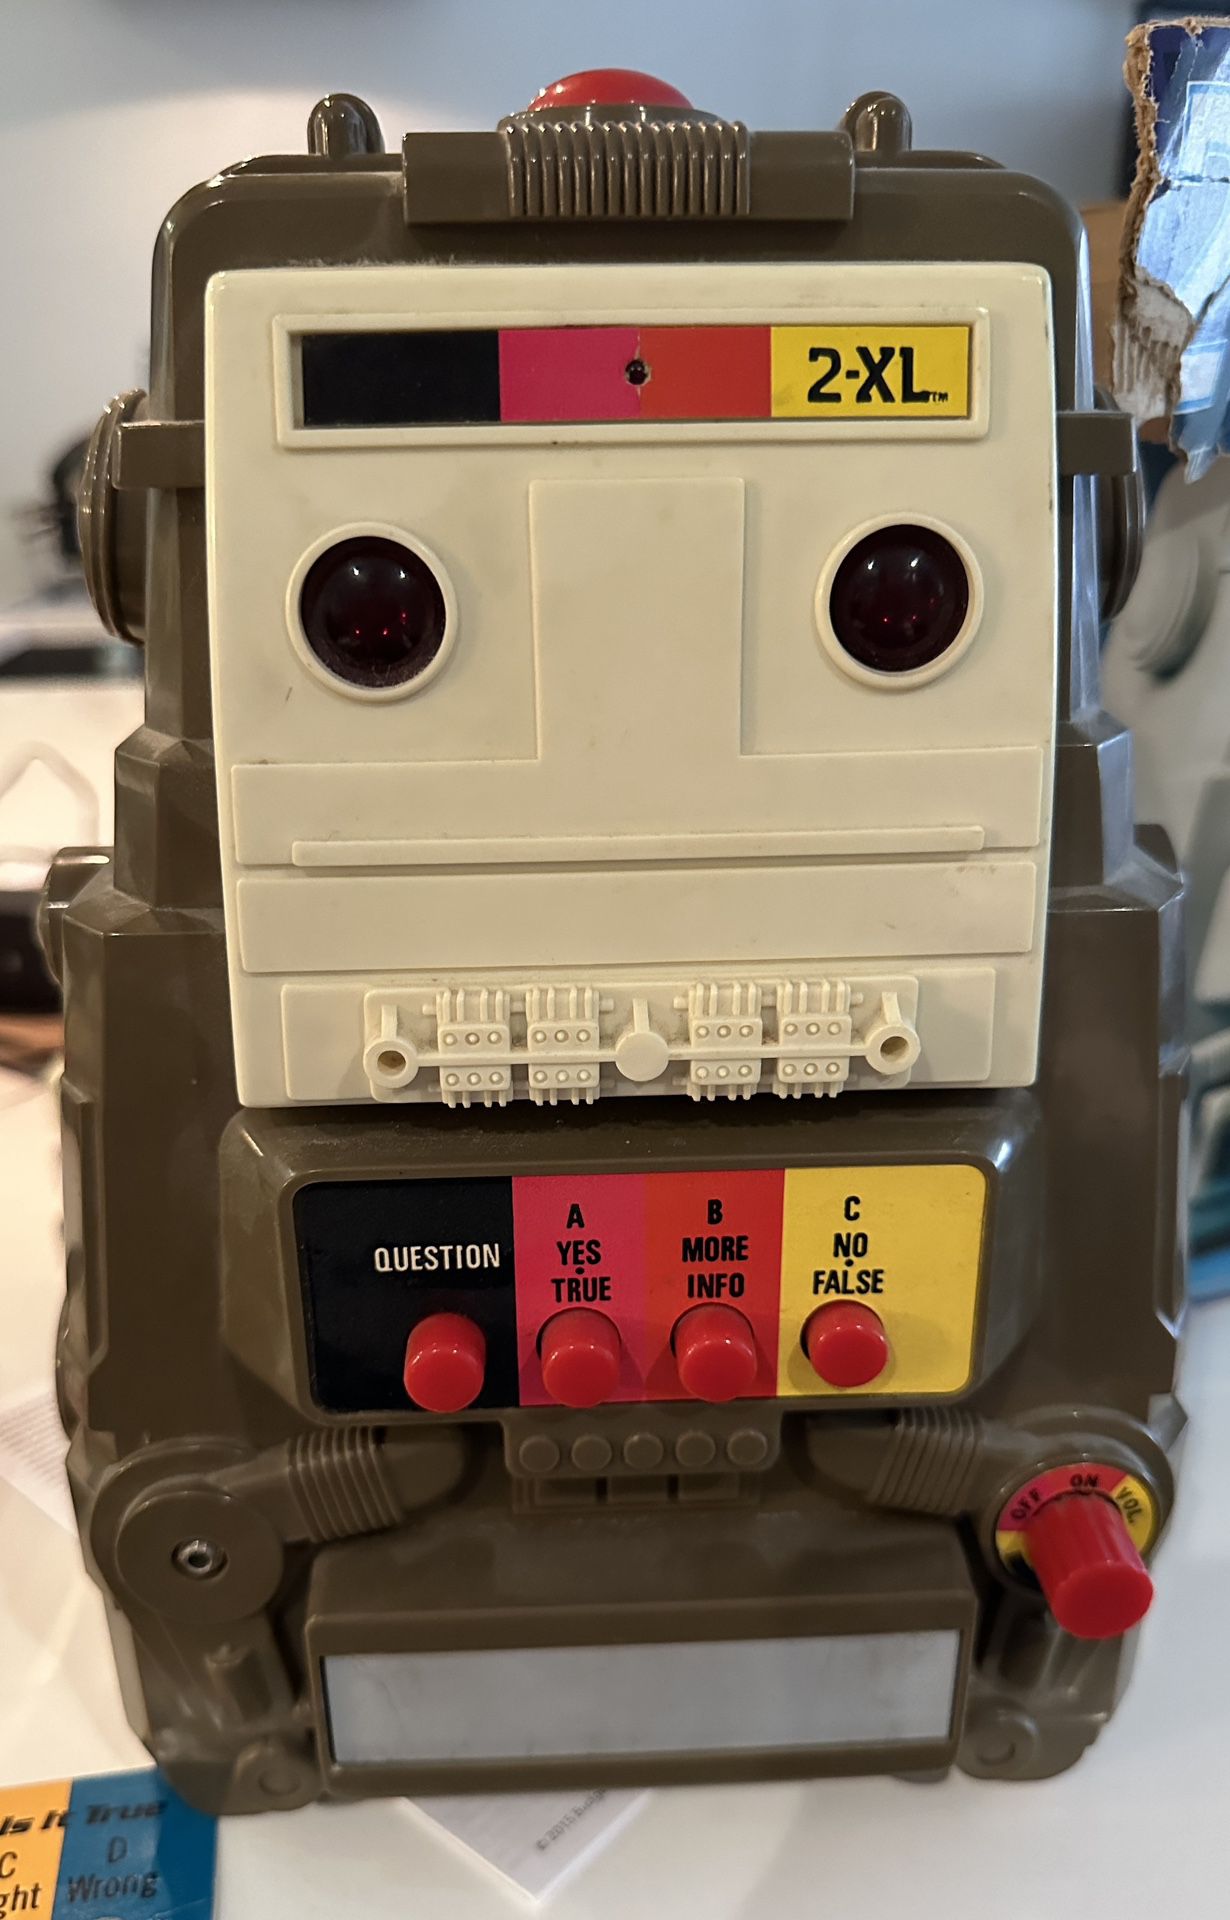 2-XL Robot Toy